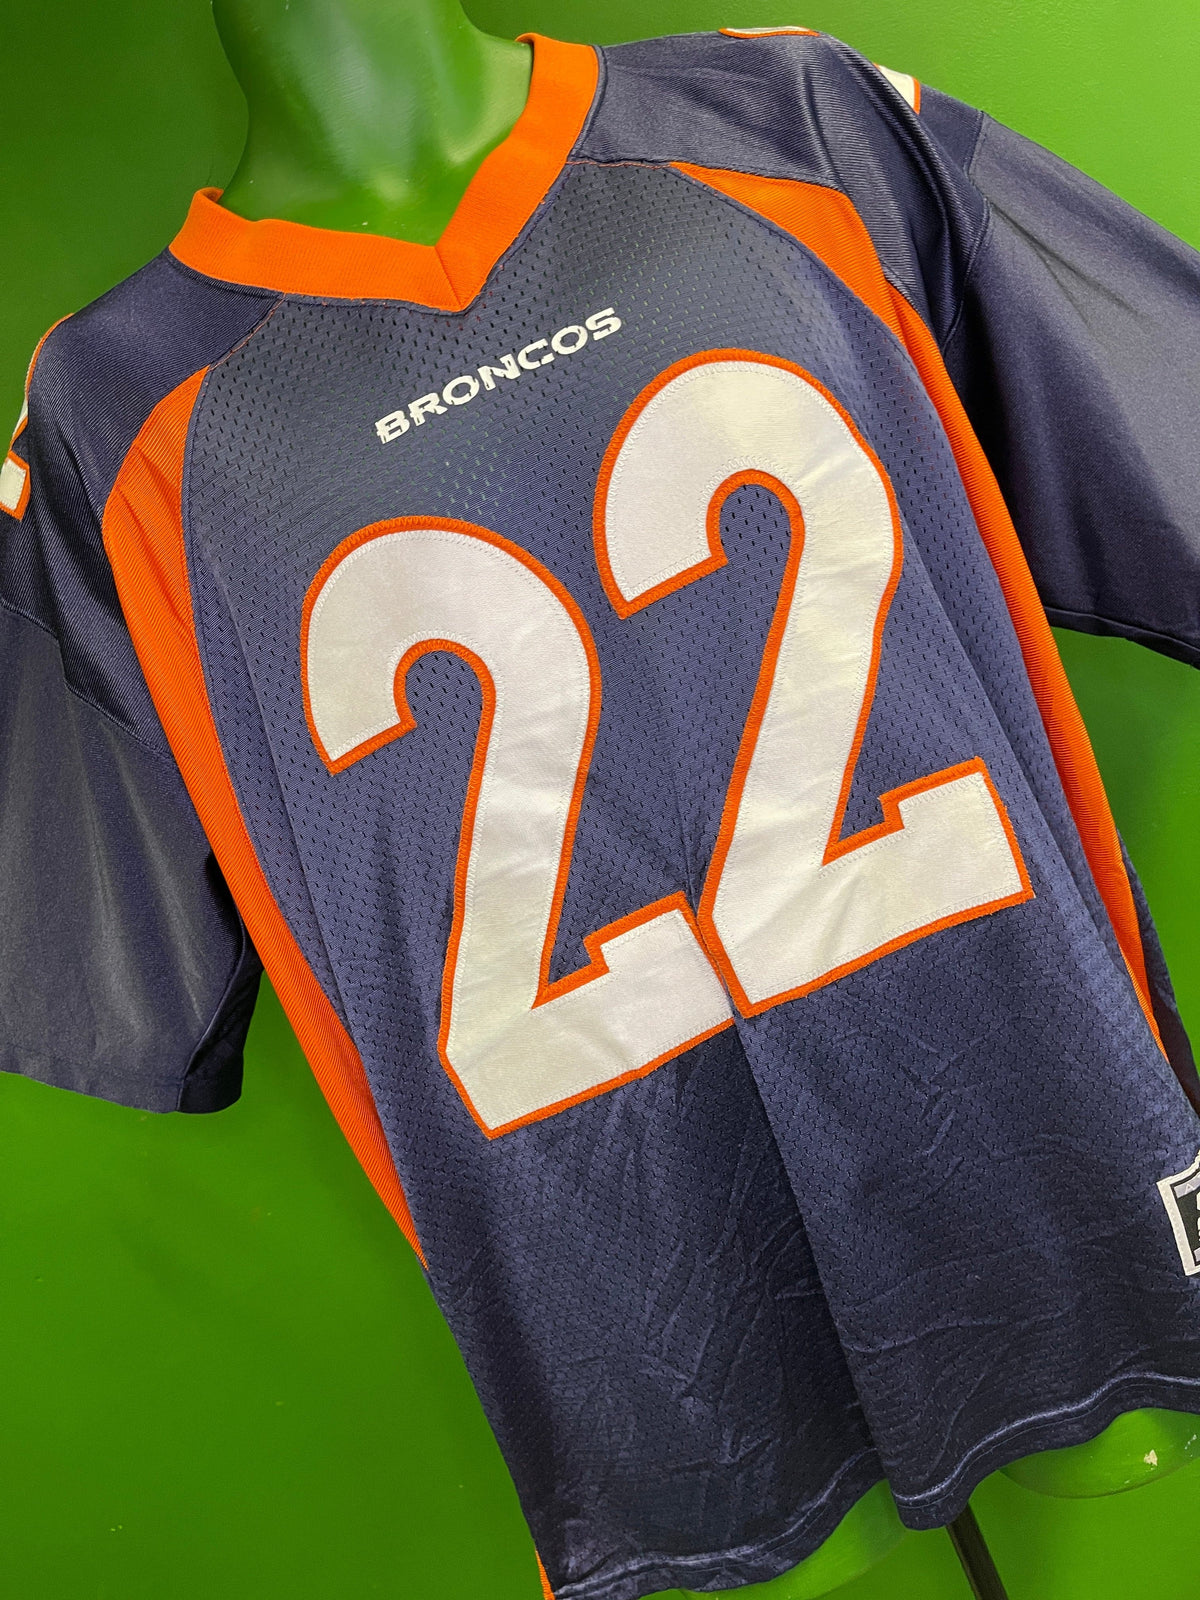 NFL Denver Broncos Olandis Gary #22 Starter Stitched Jersey Men's Large 48